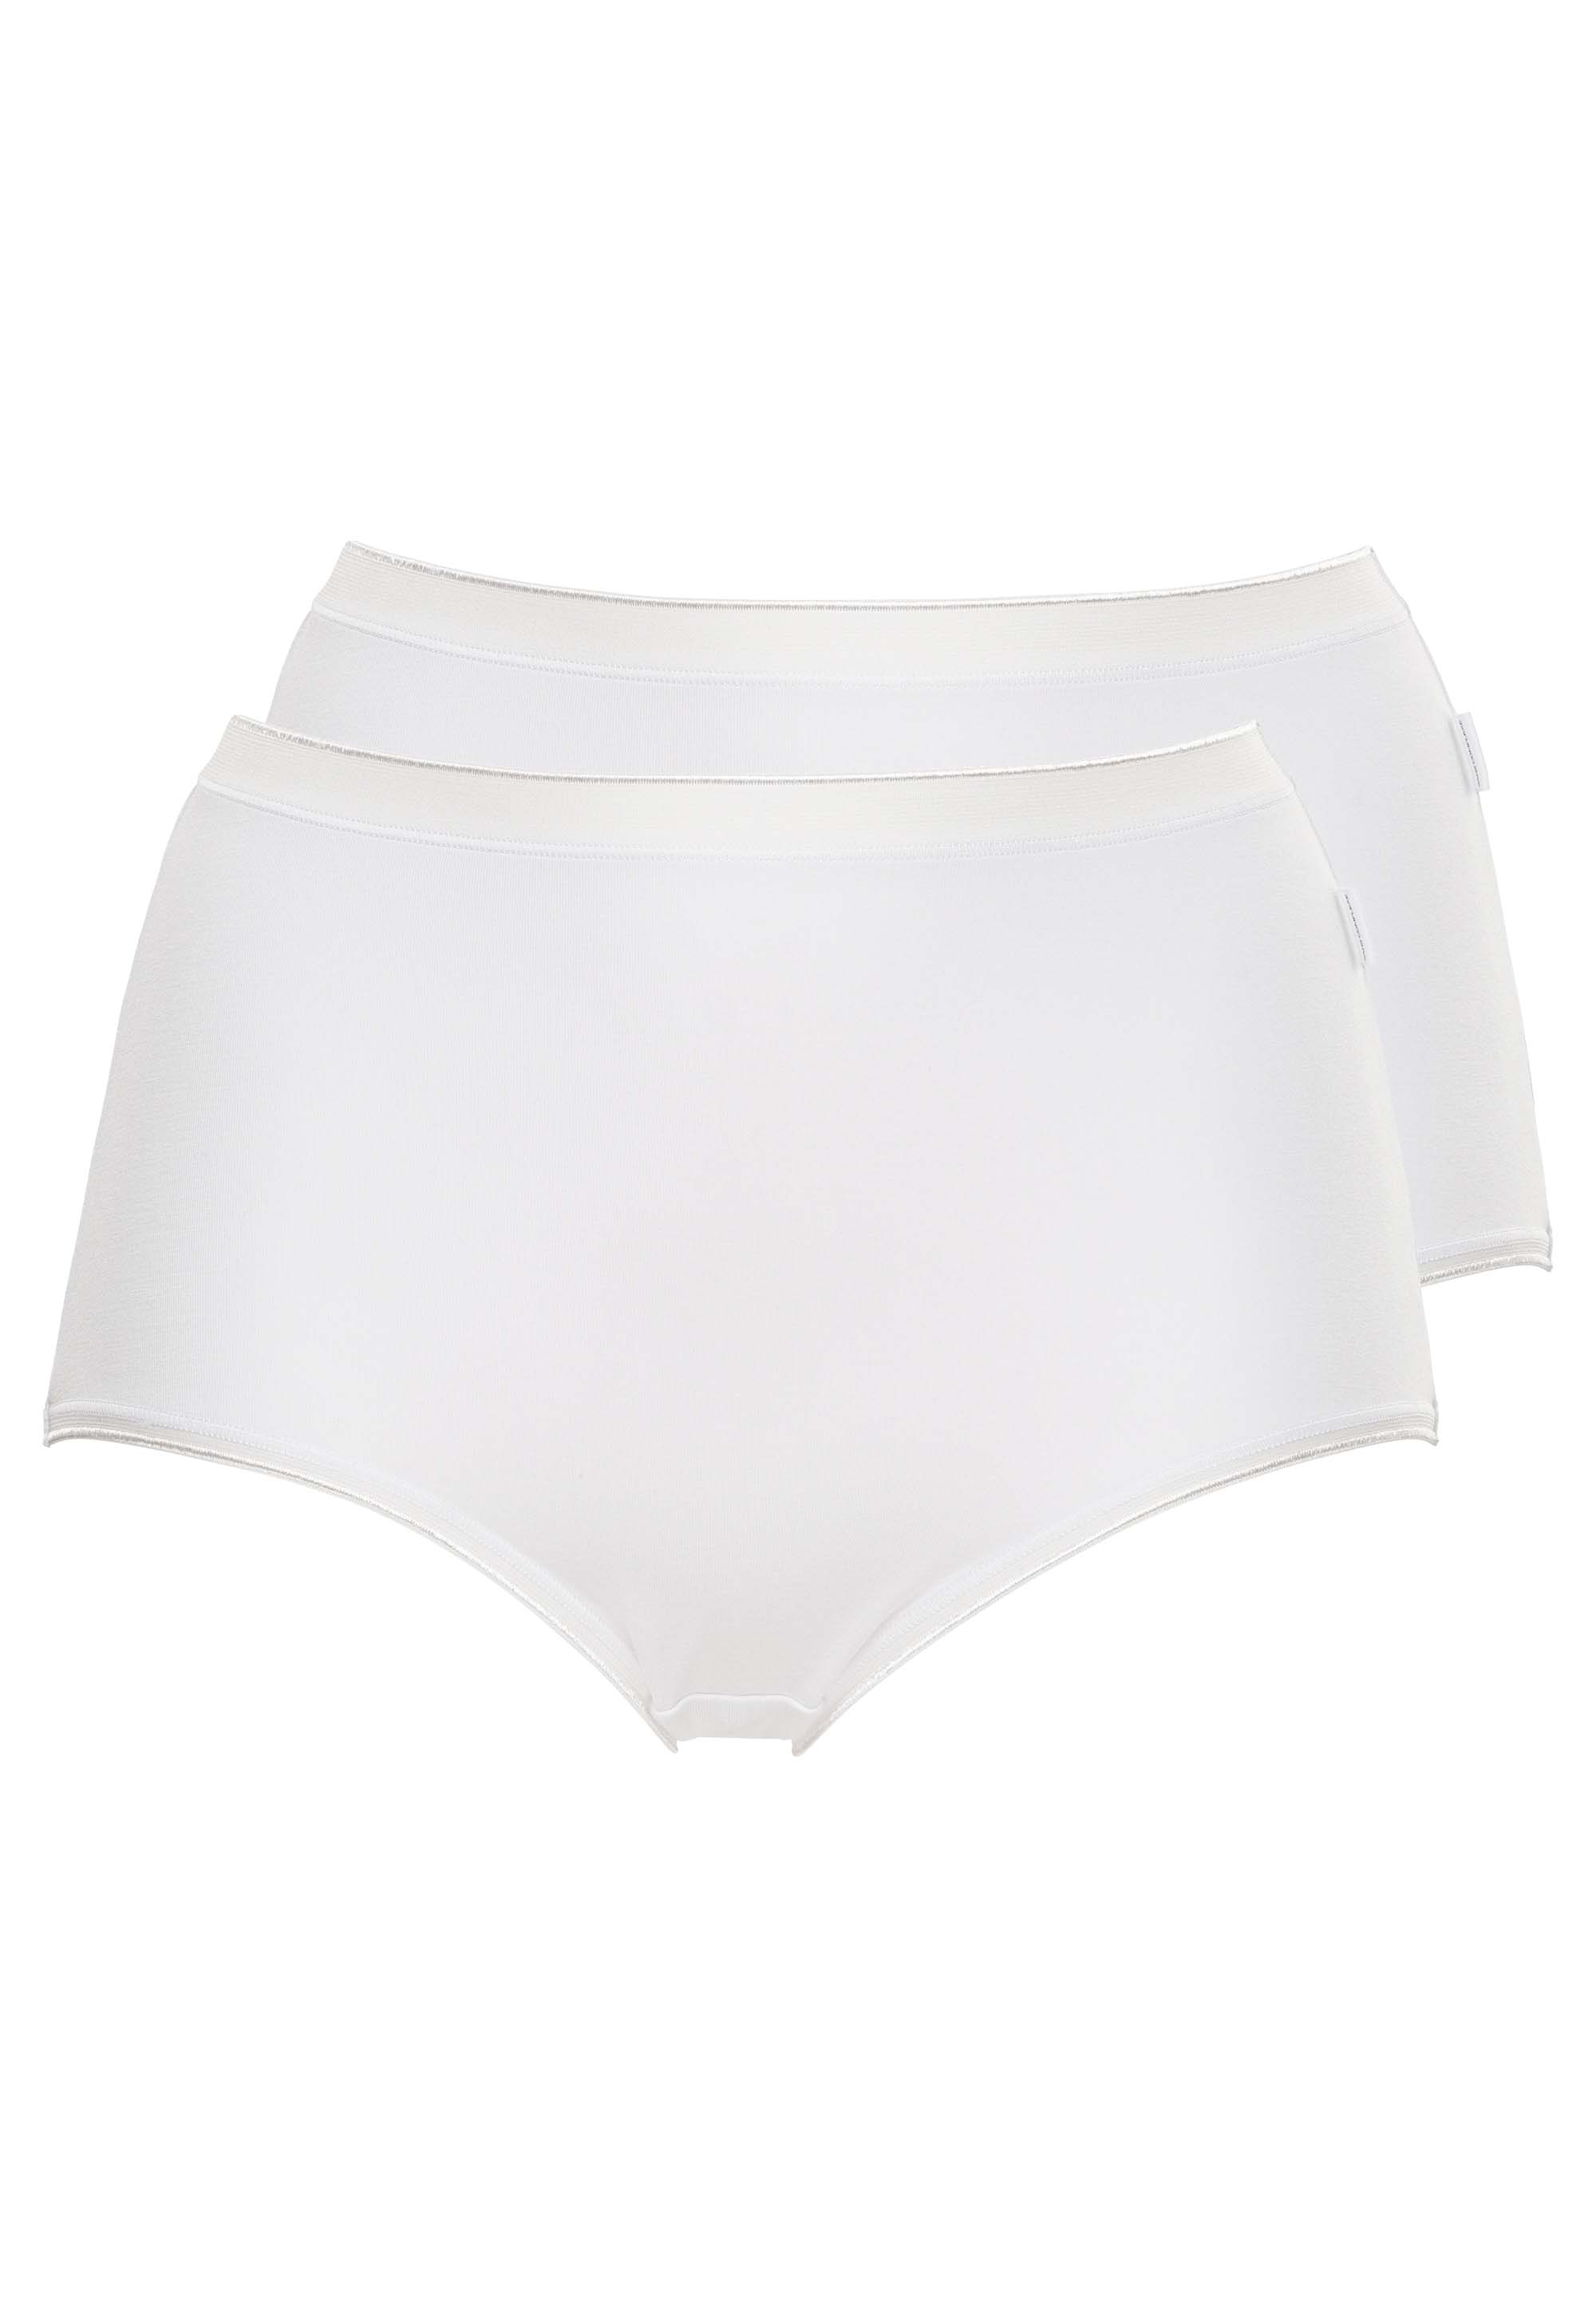 Panties - Pack of 2 Softness Bamboo White+White